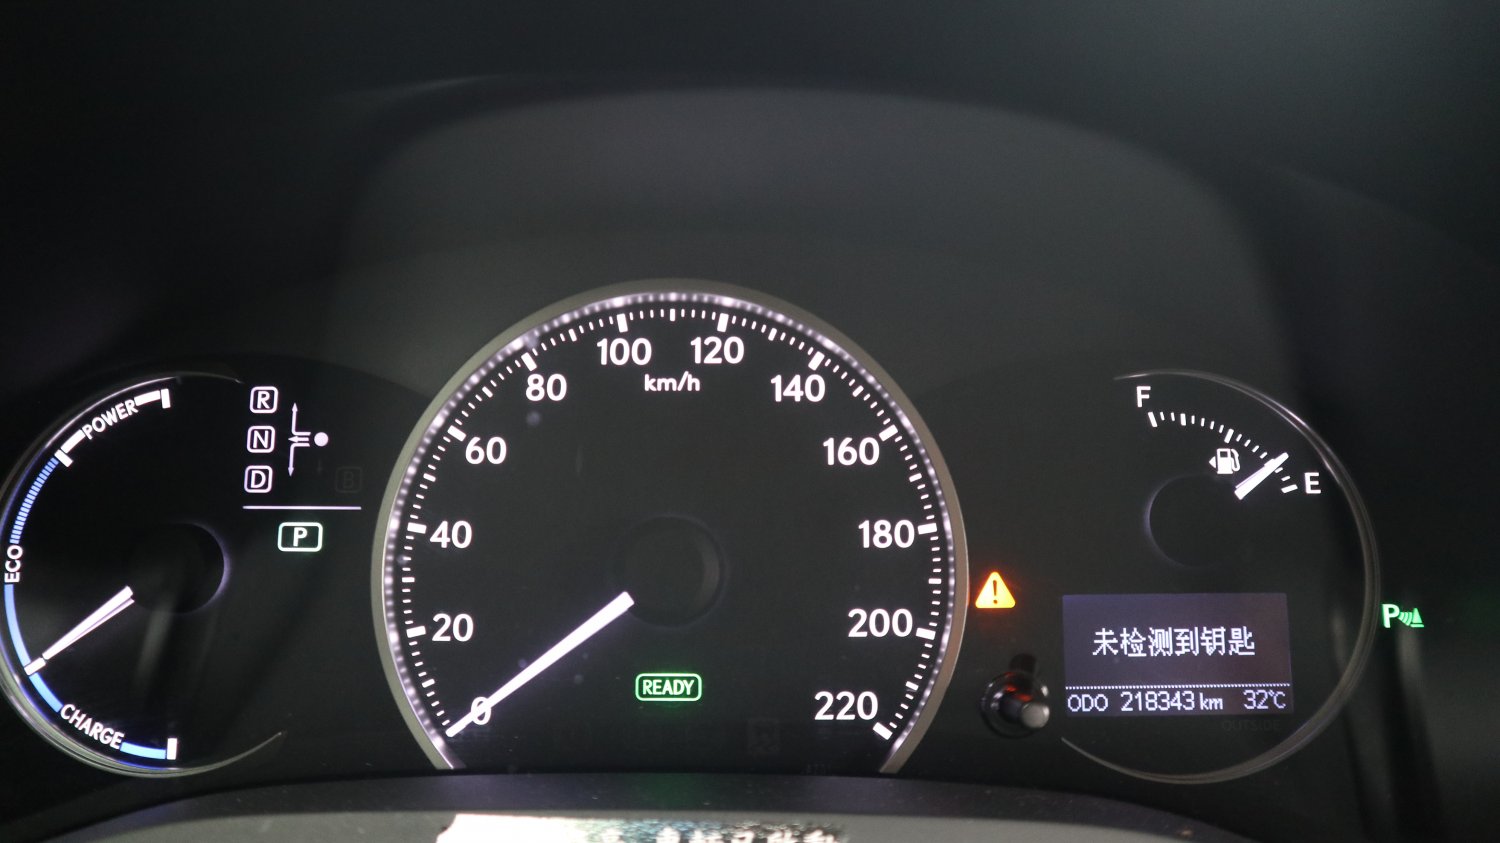 Lexus 凌志 ／ CT 系列 ／ 2014年 ／ 2014年 Lexus CT200h 白色 油電混合 凌志中古車 ／ MG車庫(台南)